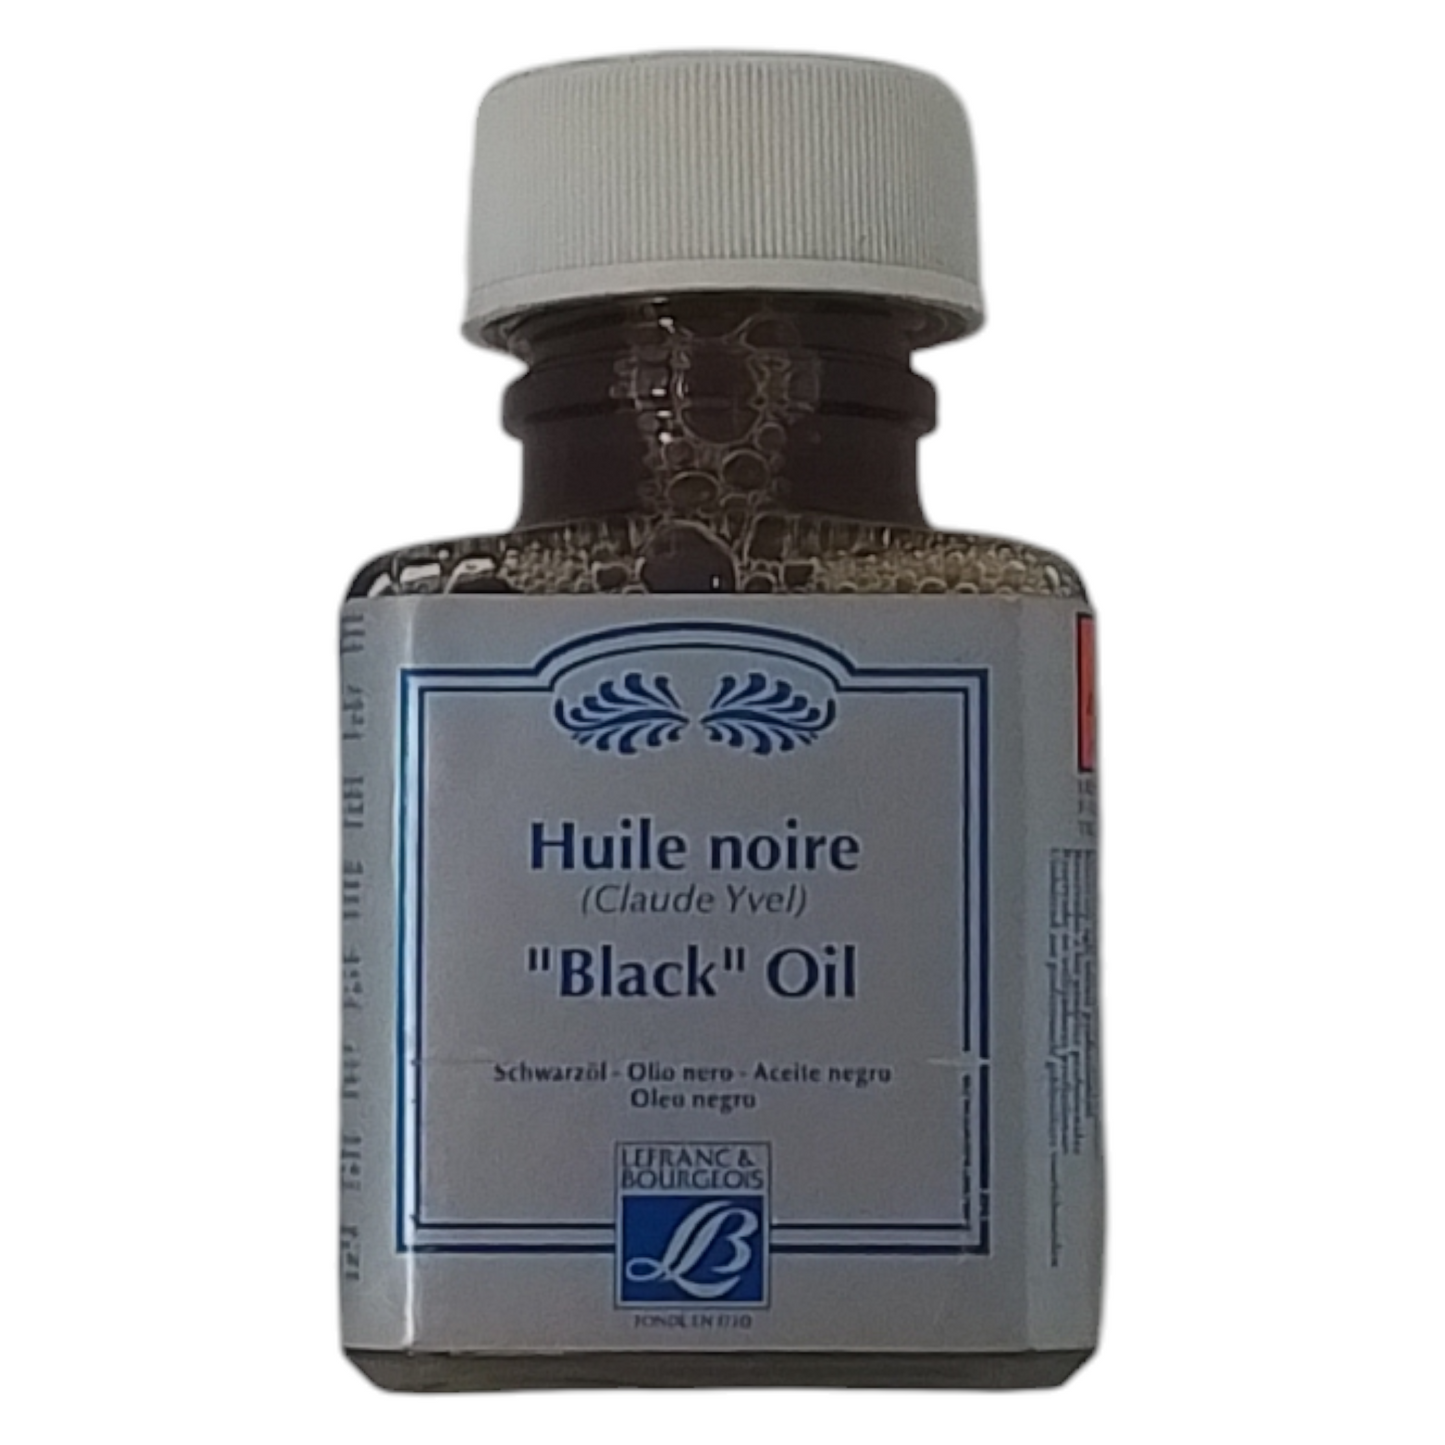 LEFRANC & BOURGEOIS Huile noire "Black" Oil